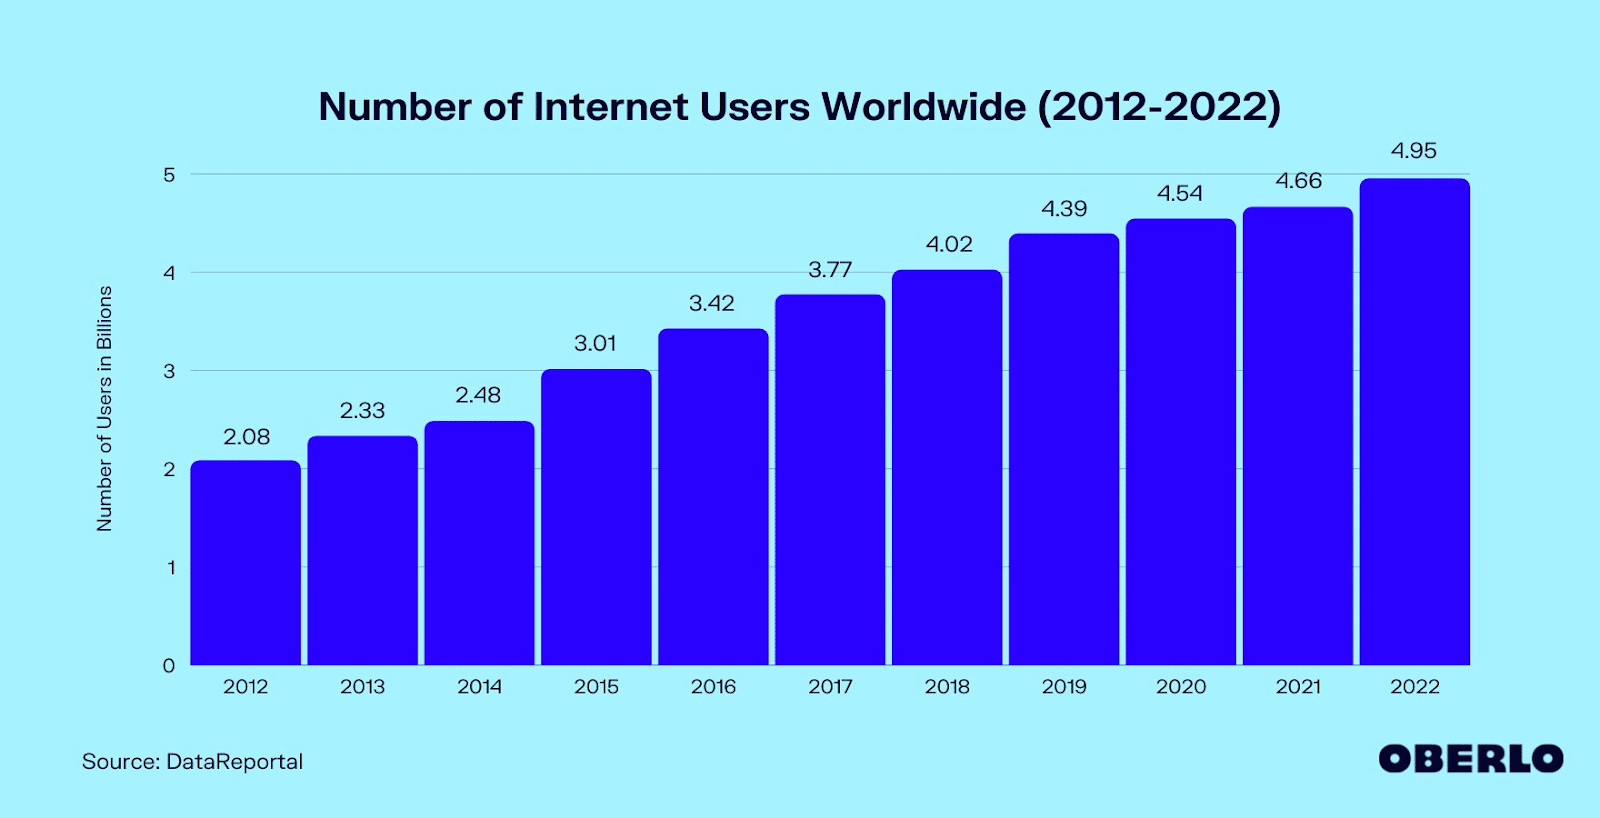 Grafico a istogramma di Oberlo che mostra il numero di utenti internet nel mondo tra il 2012 e il 2022: si partiva da circa 2 miliardi di utenti nel 2012, per raggiungere quasi i 5 miliardi nel 2022